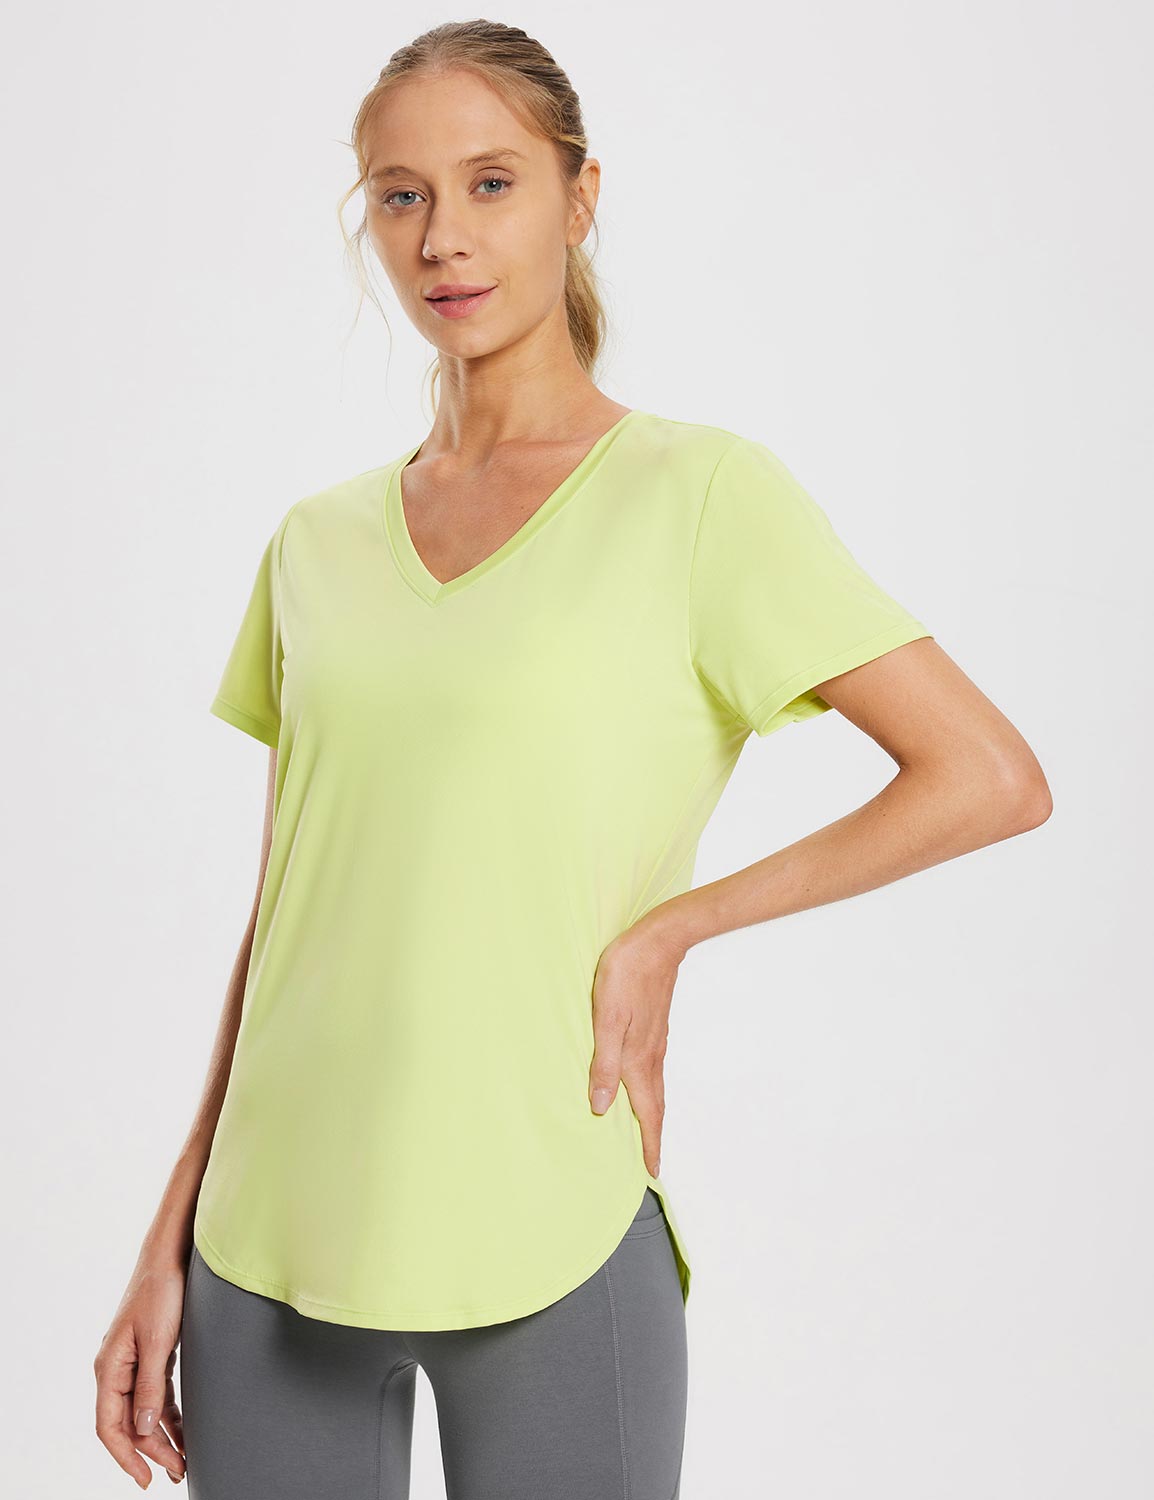 Baleaf Women's Laureate V Neck Mesh Back Shirts ebd015 Shadow Lime Side